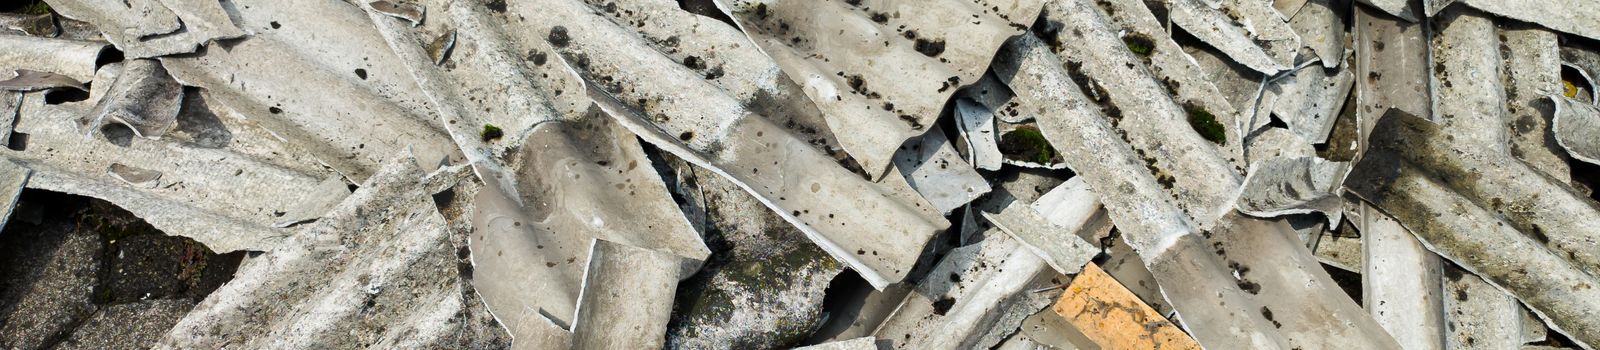 Broken Asbestos Cement Sheets.jpg